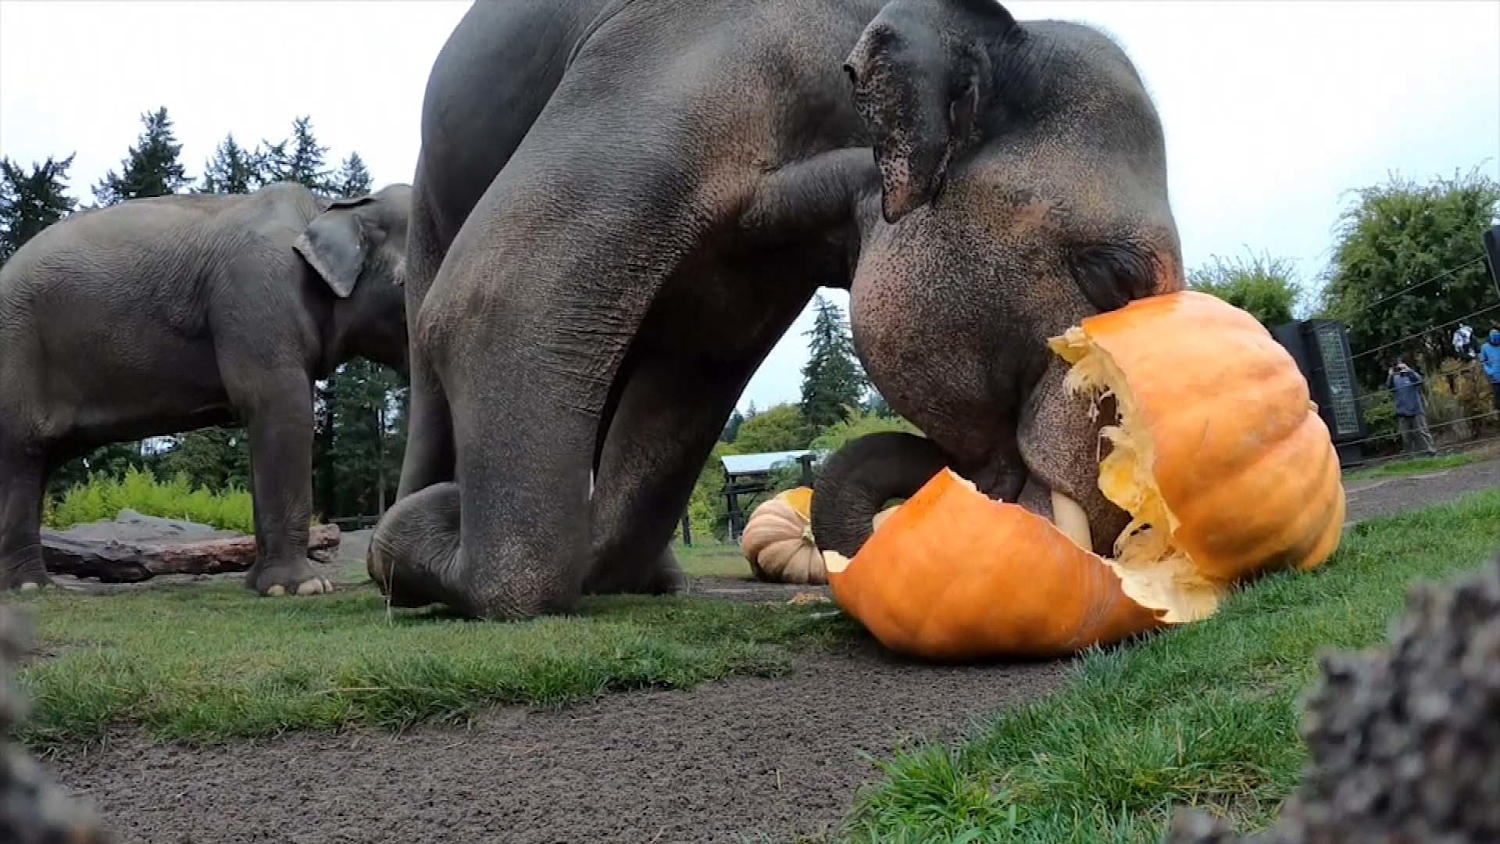 Portland zoo's elephants have a smashing time with pumpkins